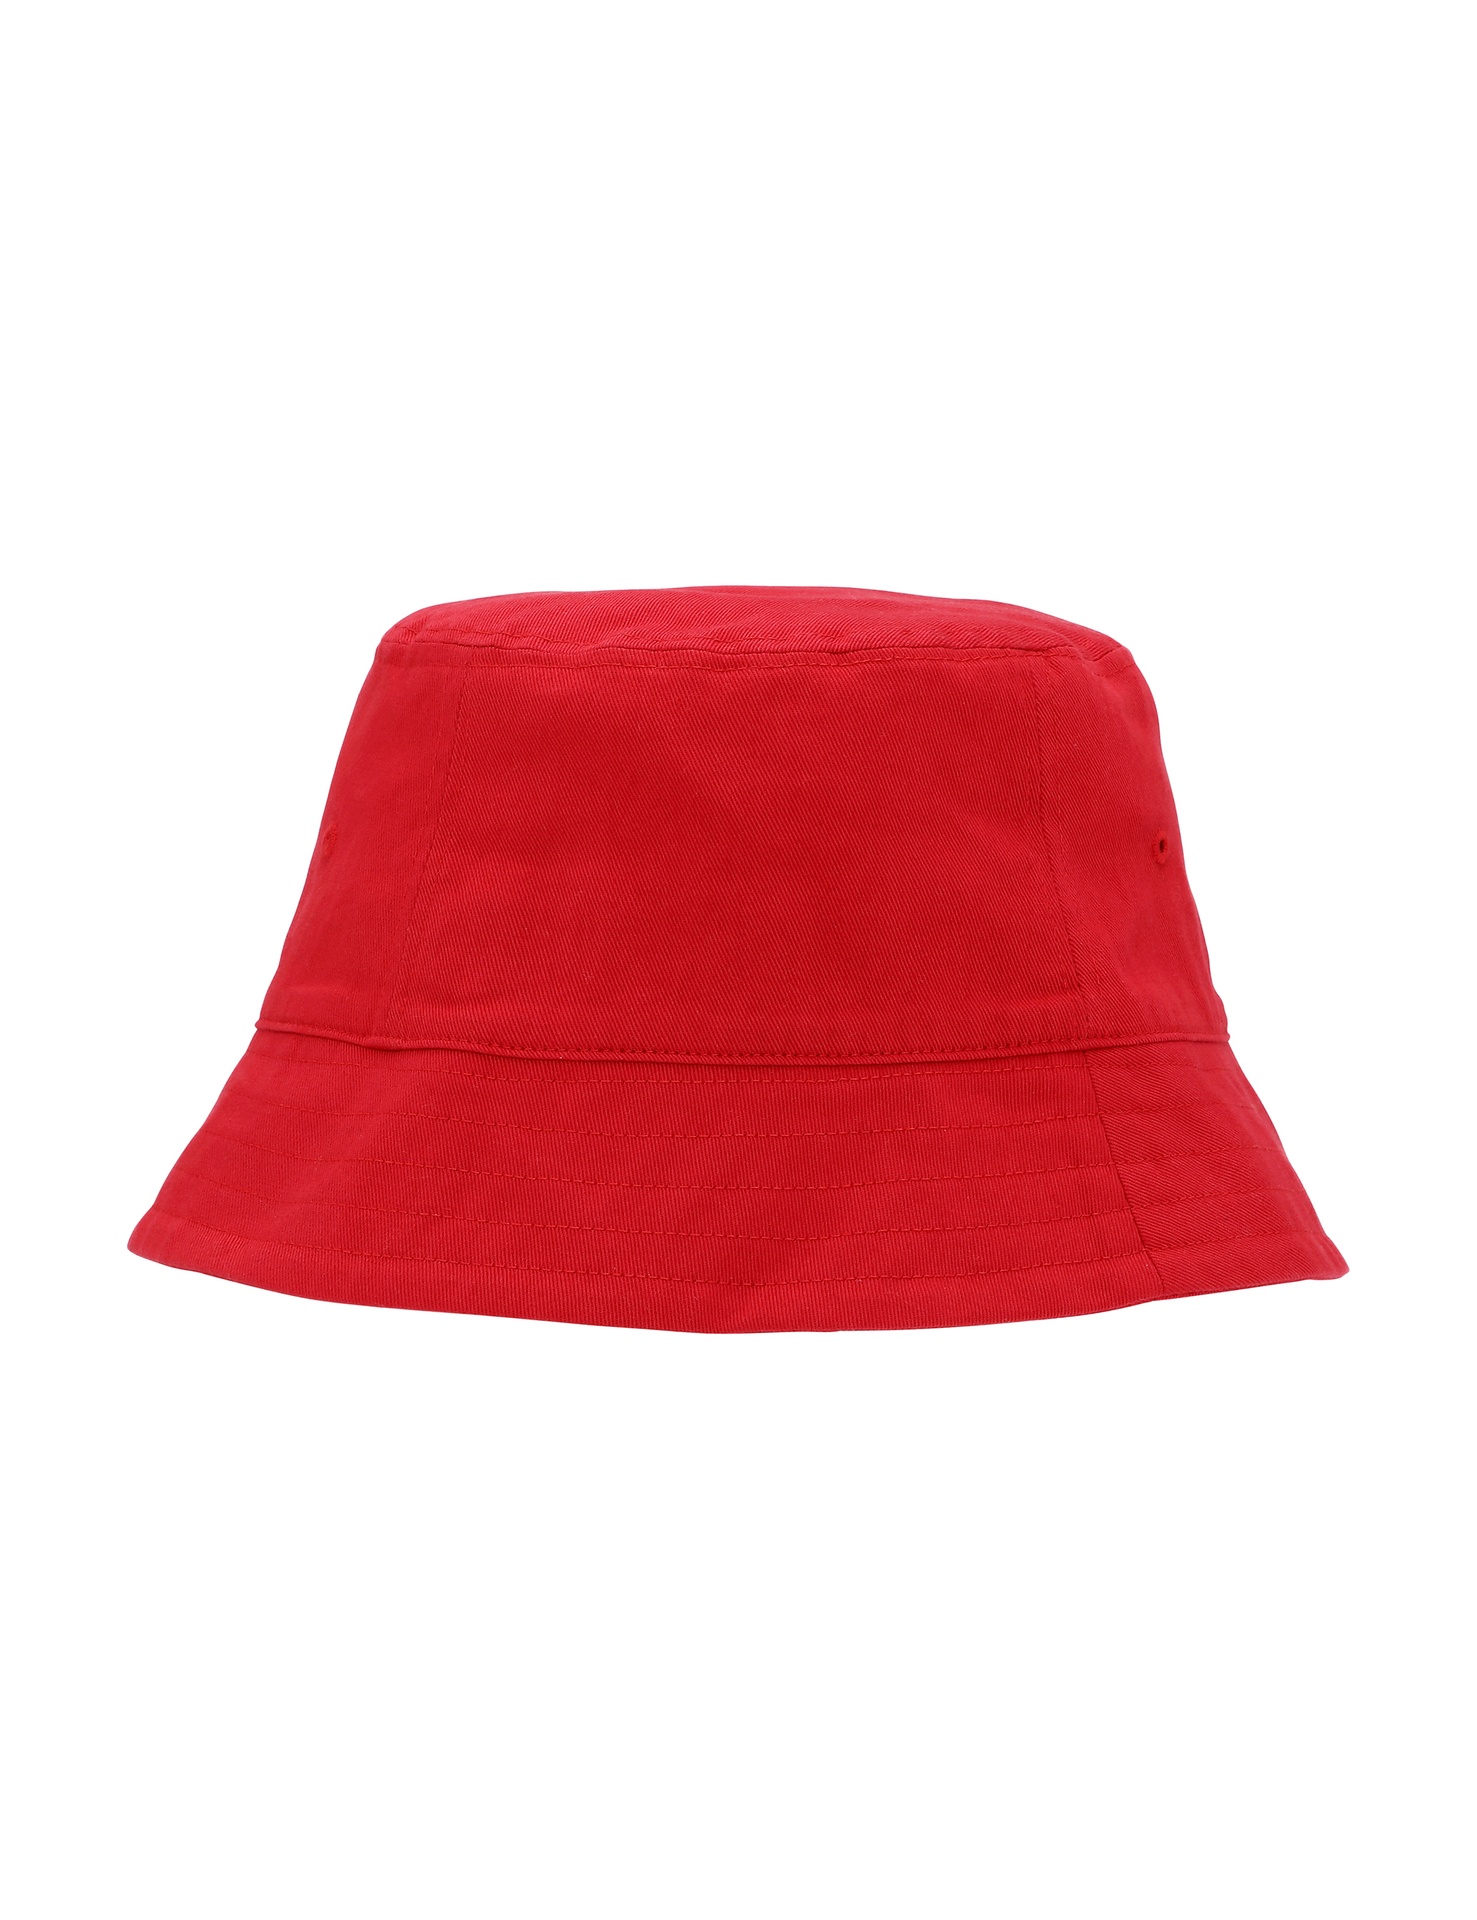 [PR/05934] Bucket Hat (Red 05, S/M)